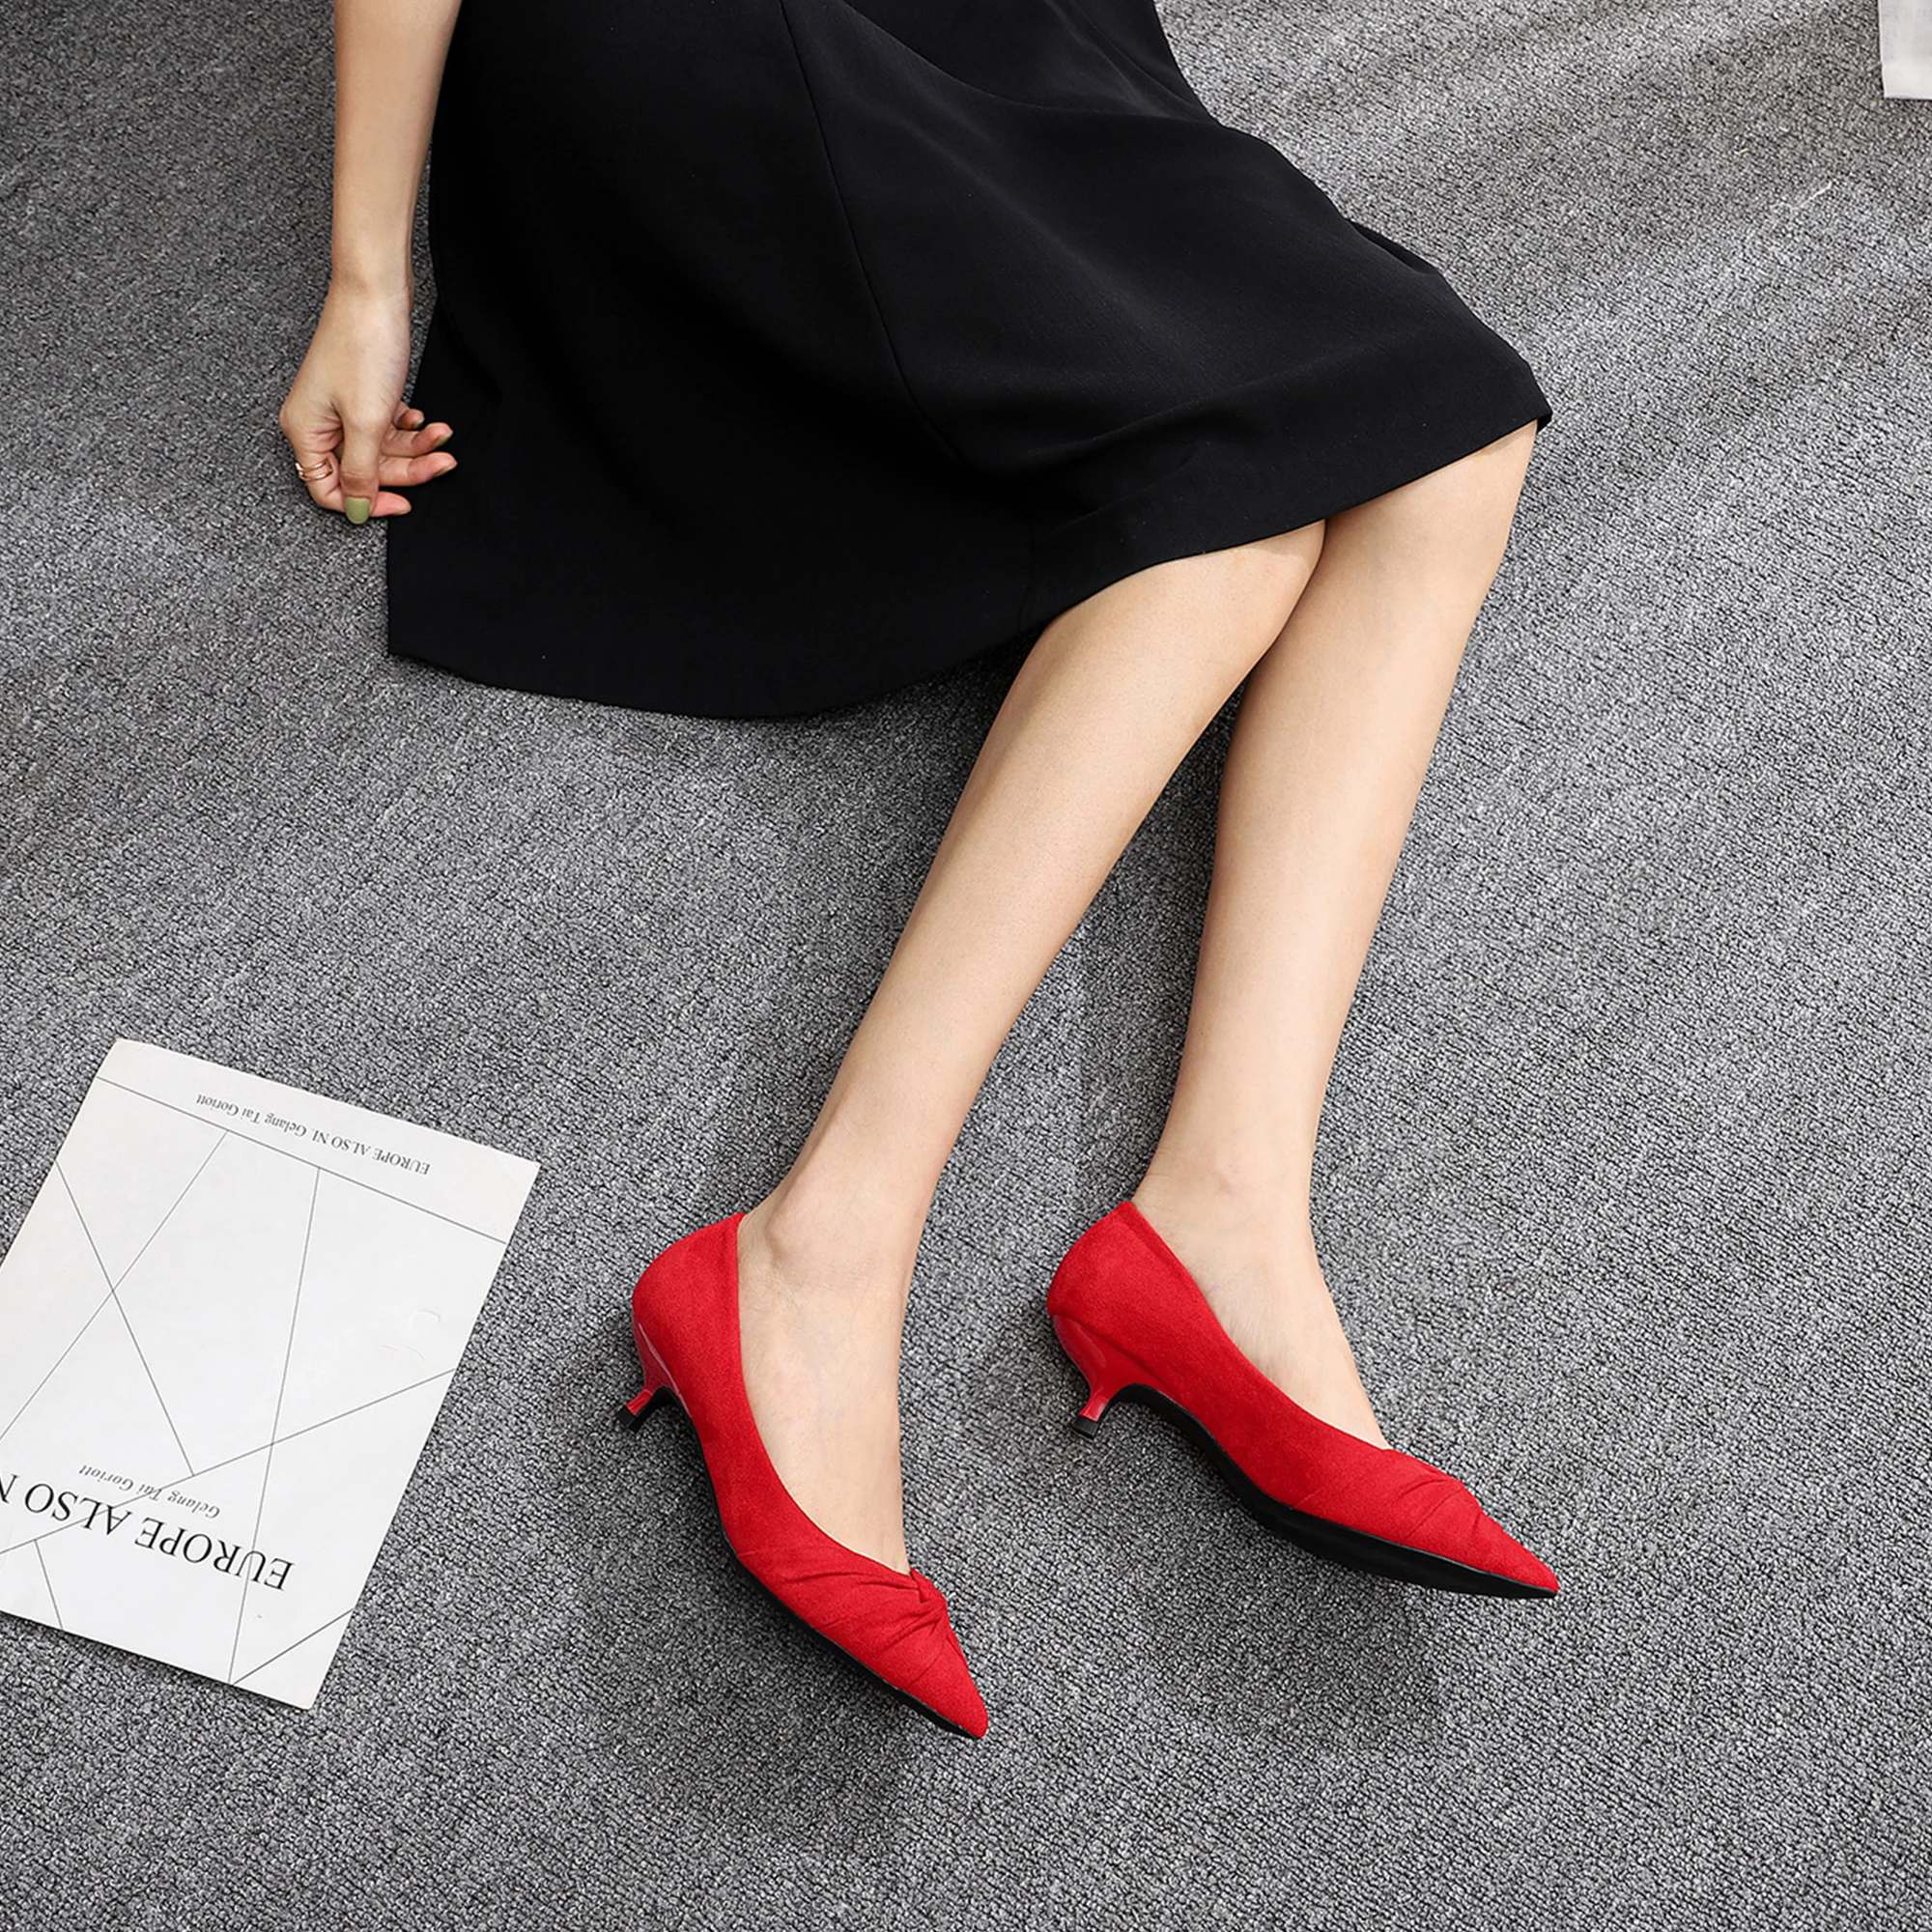 Tacones de mujer 2019 puntiagudos de tacón bajo zapatos rojos de tacón alto de mujer 3cm zapatos de de novia tacones tacón bajo sexy de tacón medio|Zapatos de